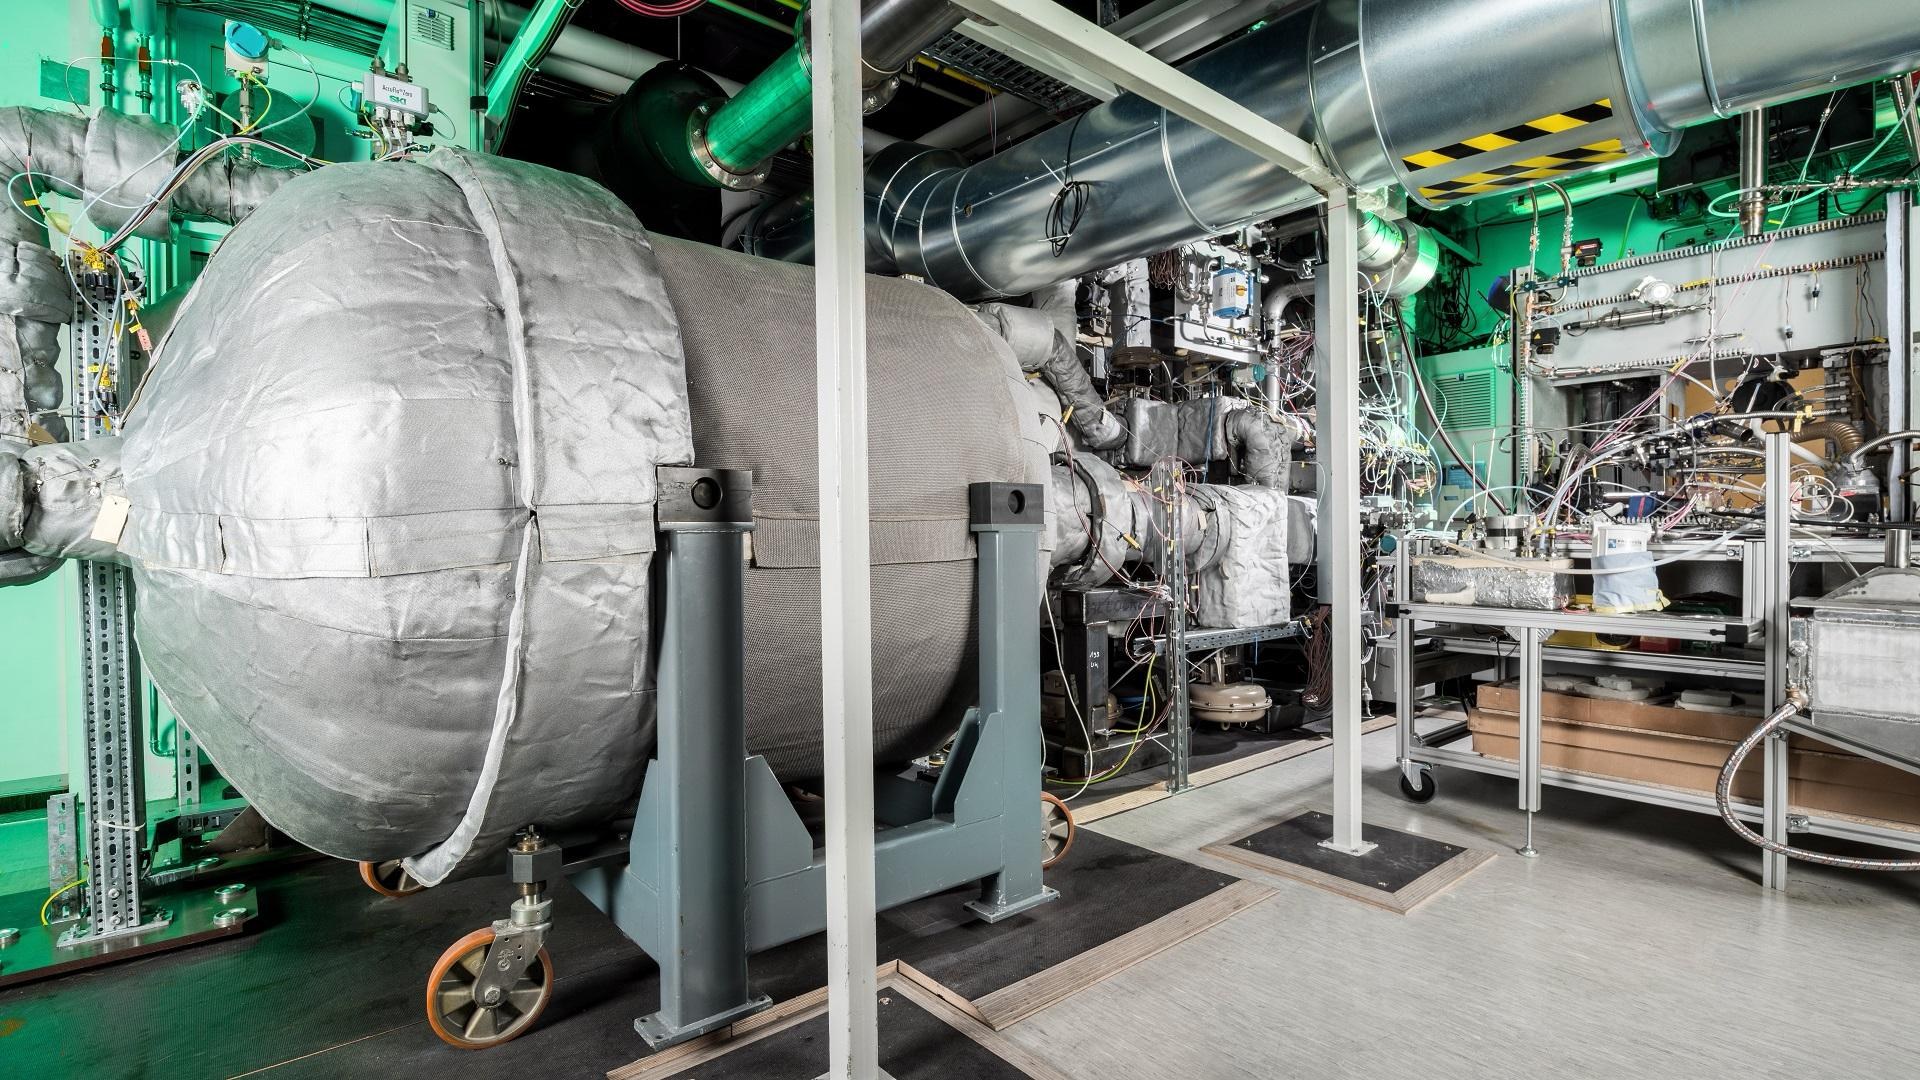 Untersuchung eines hocheffizienten Hybridkraftwerks im Forschungskraftwerk